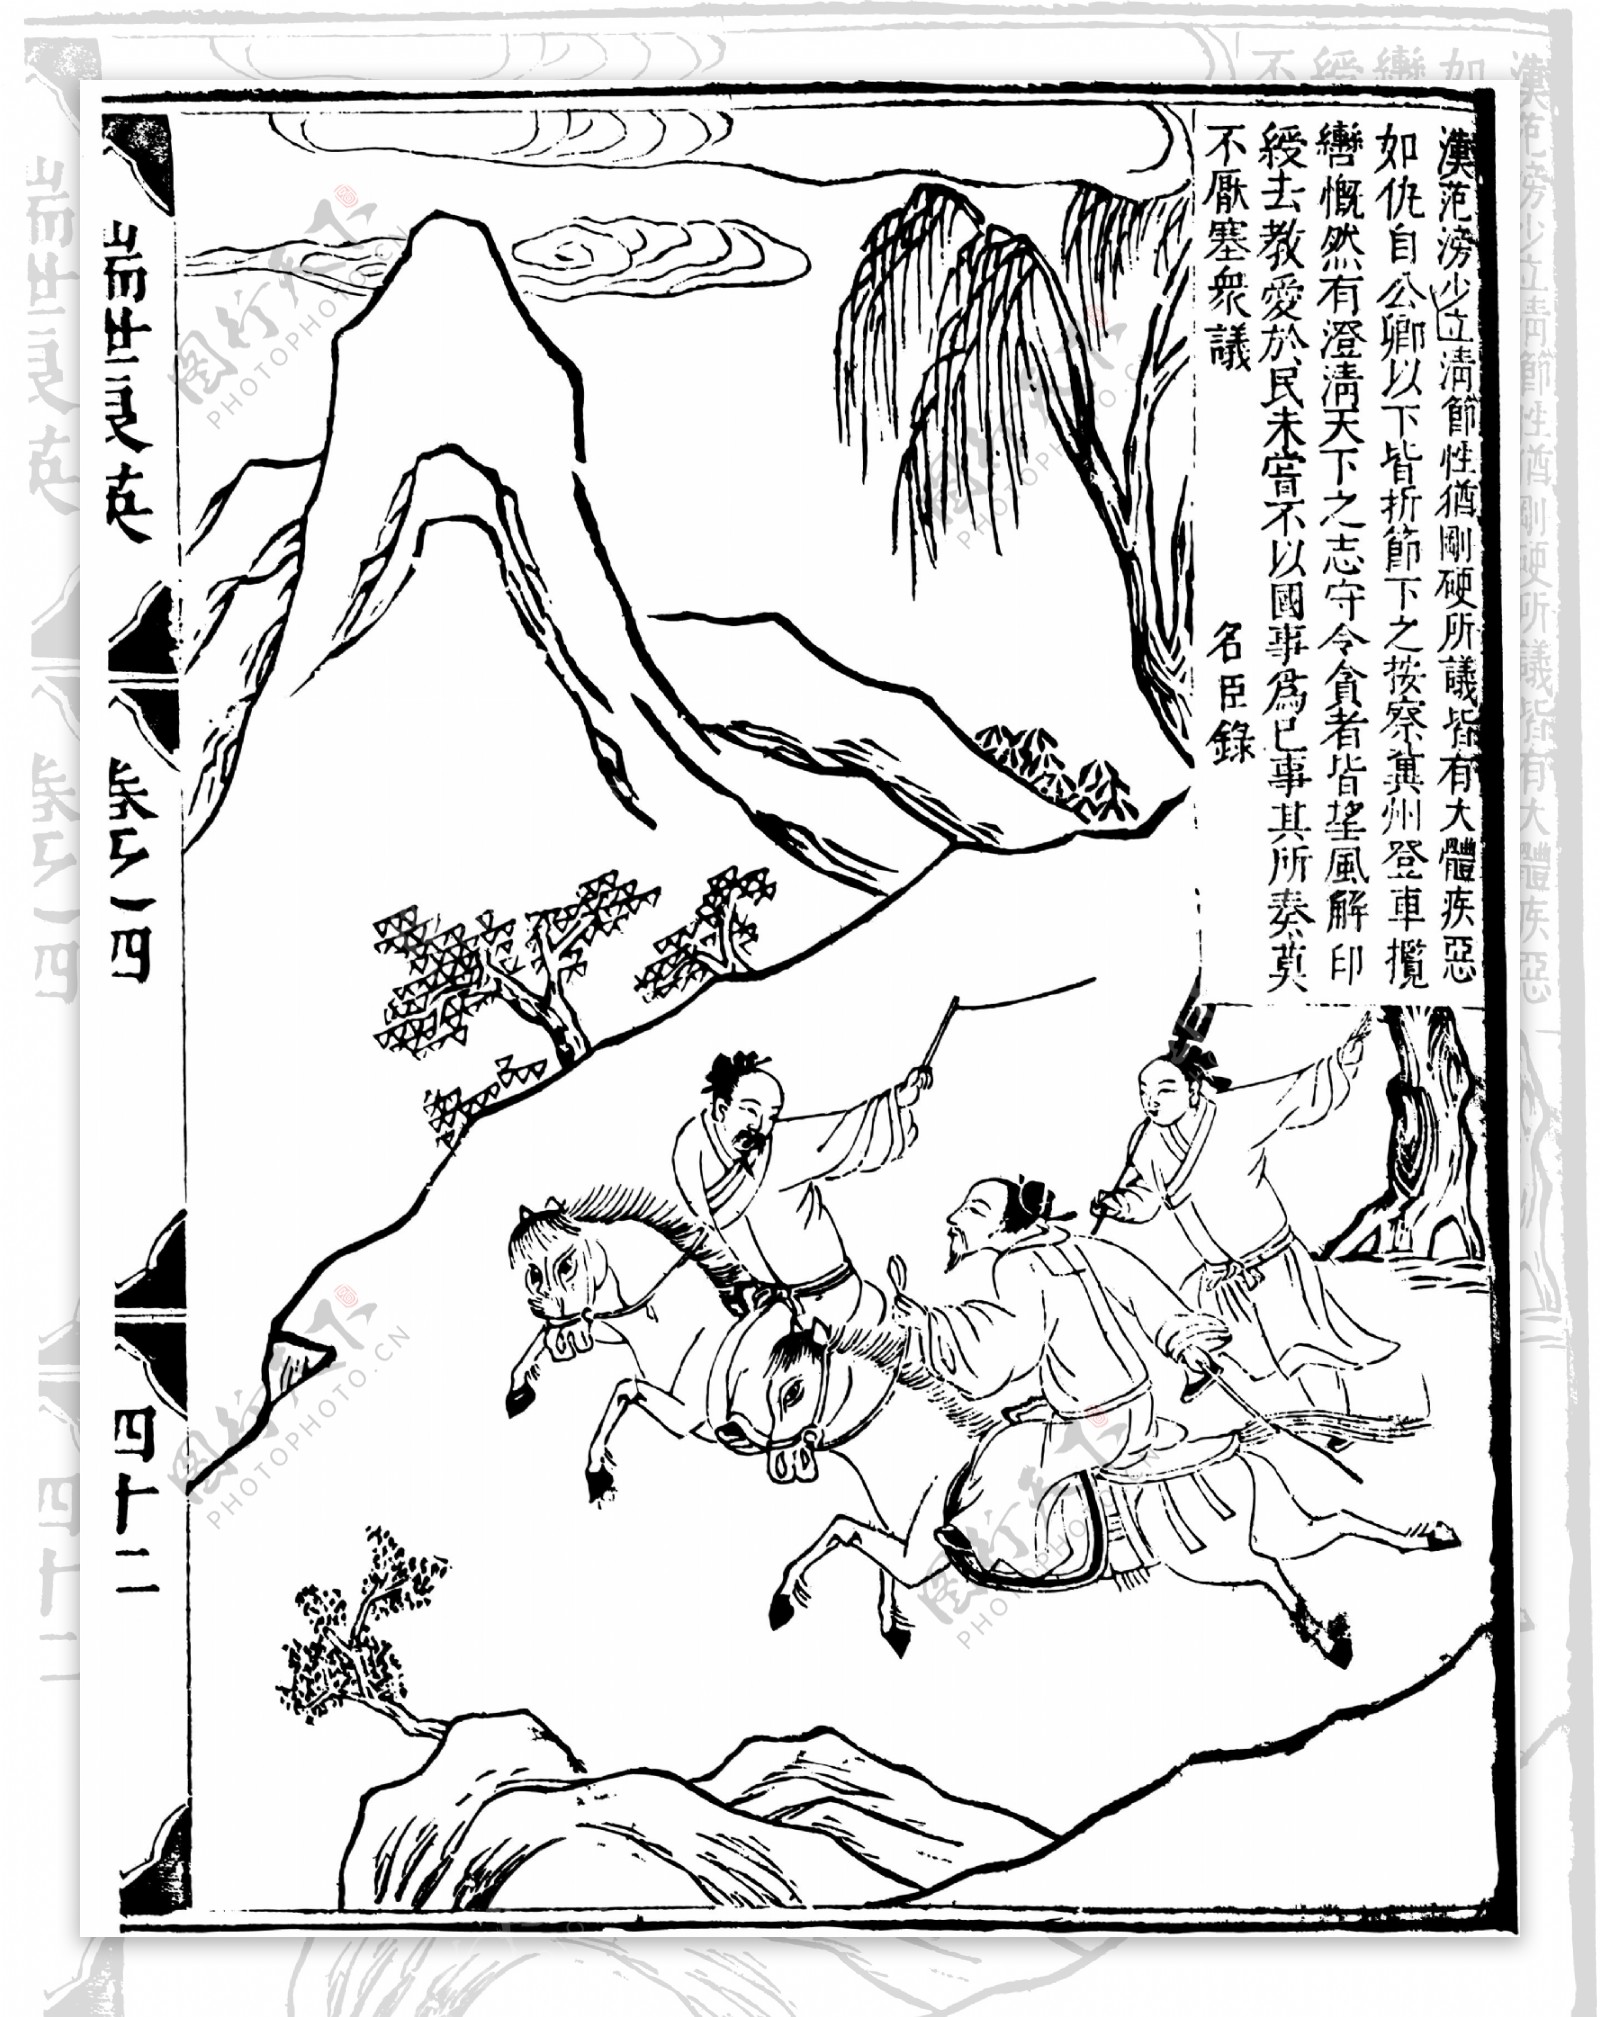 瑞世良英木刻版画中国传统文化20